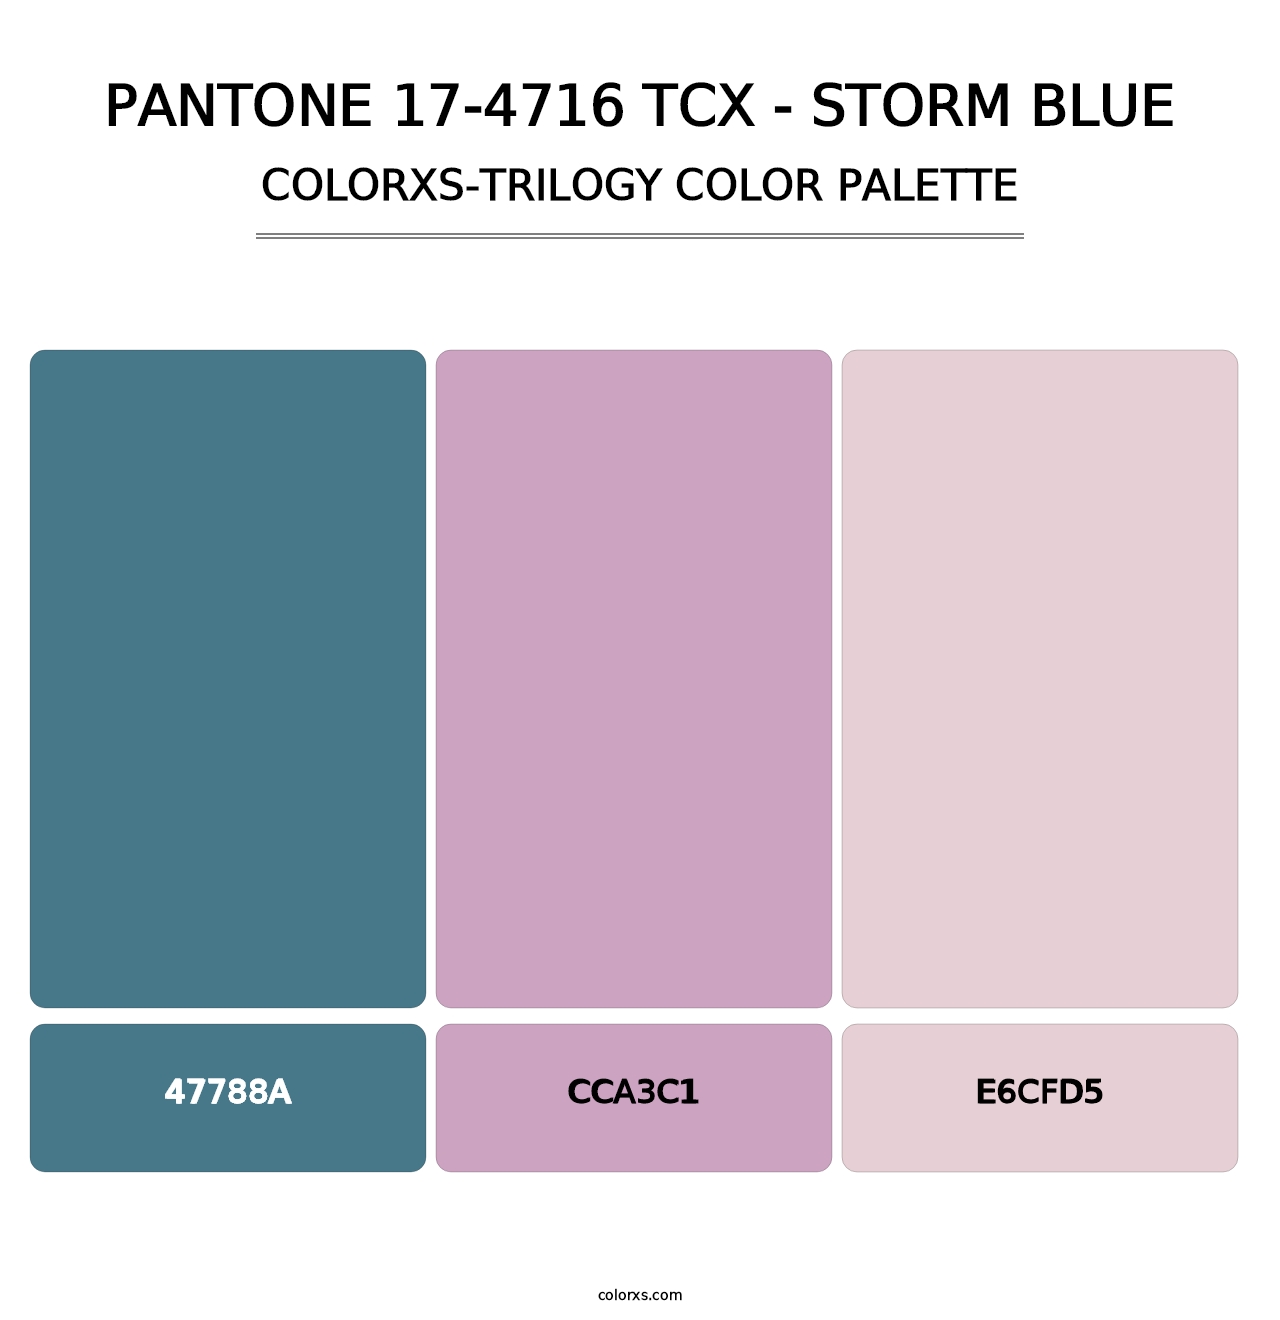 PANTONE 17-4716 TCX - Storm Blue - Colorxs Trilogy Palette